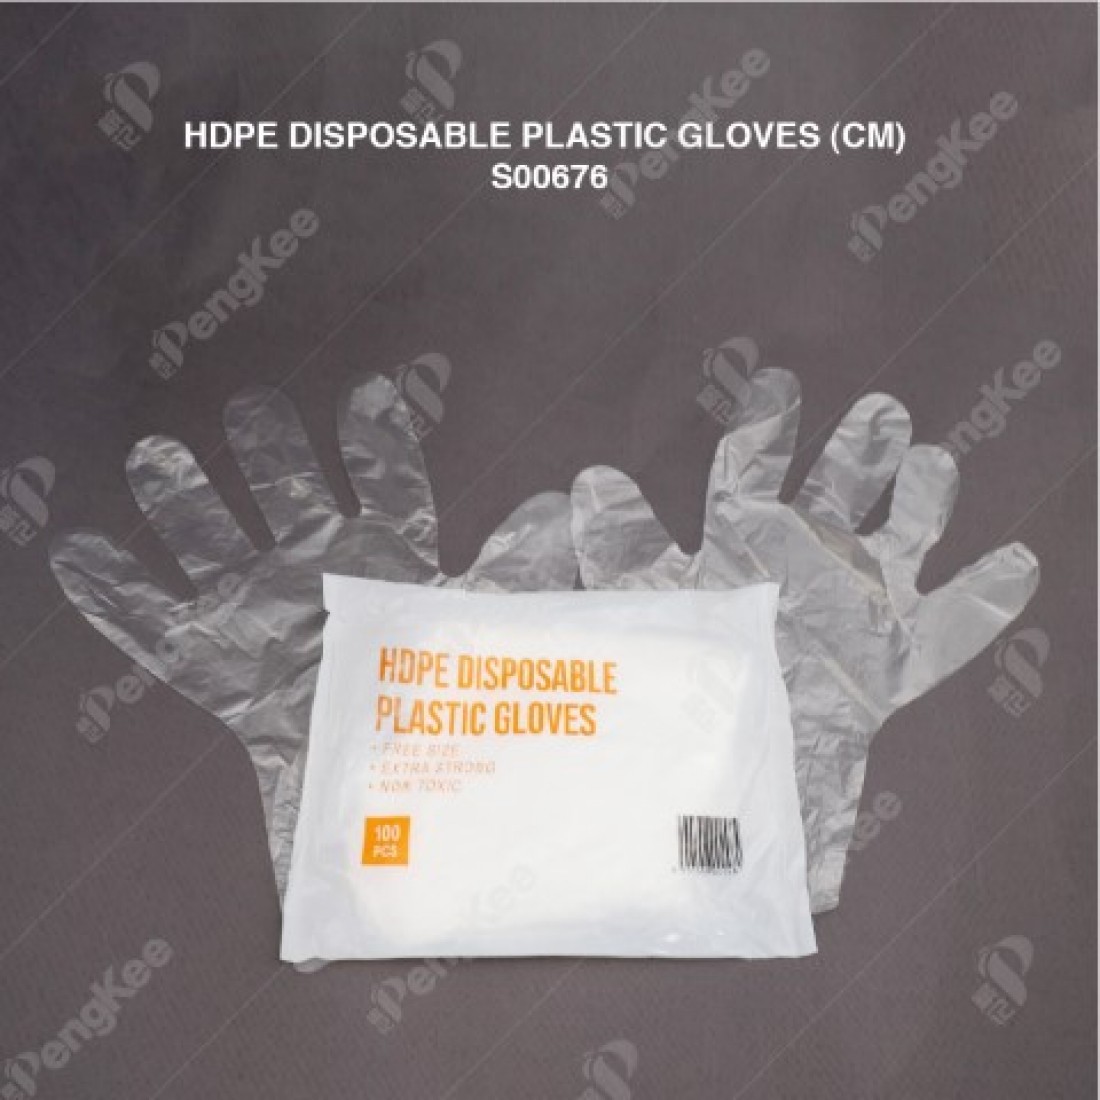 PLASTIC GLOVES HDPE DISPOSABLE (CM) (100PKT/CTN)